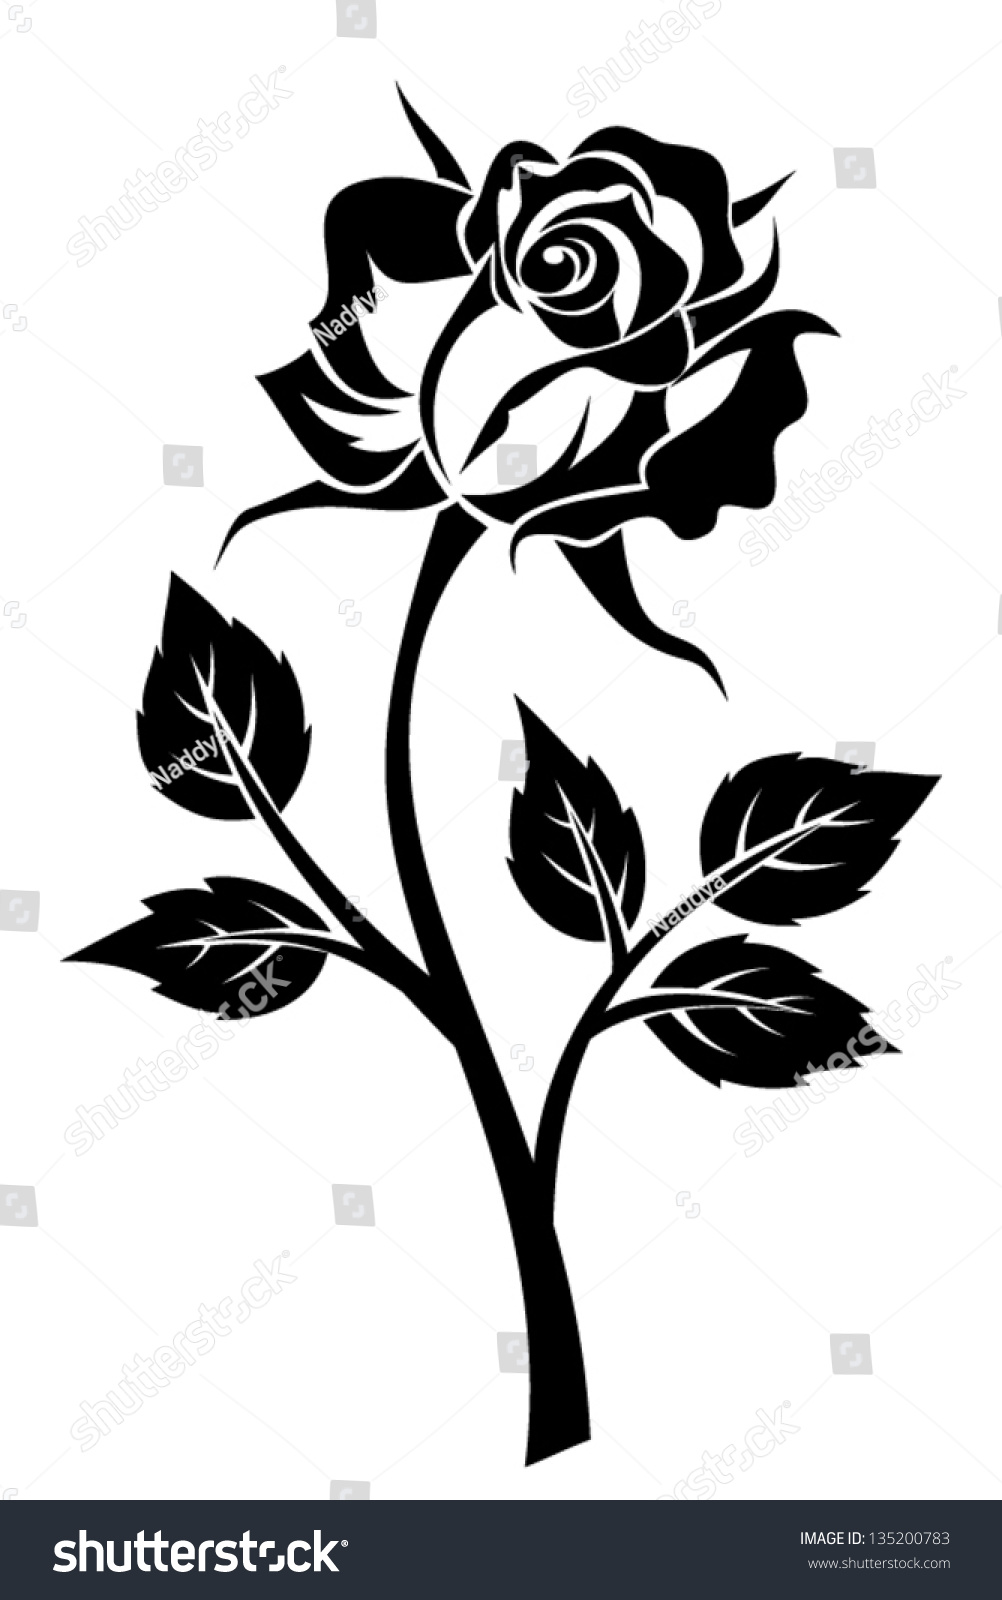 Black Silhouette Rose Stem Vector Illustration Stock Vector 135200783 ...